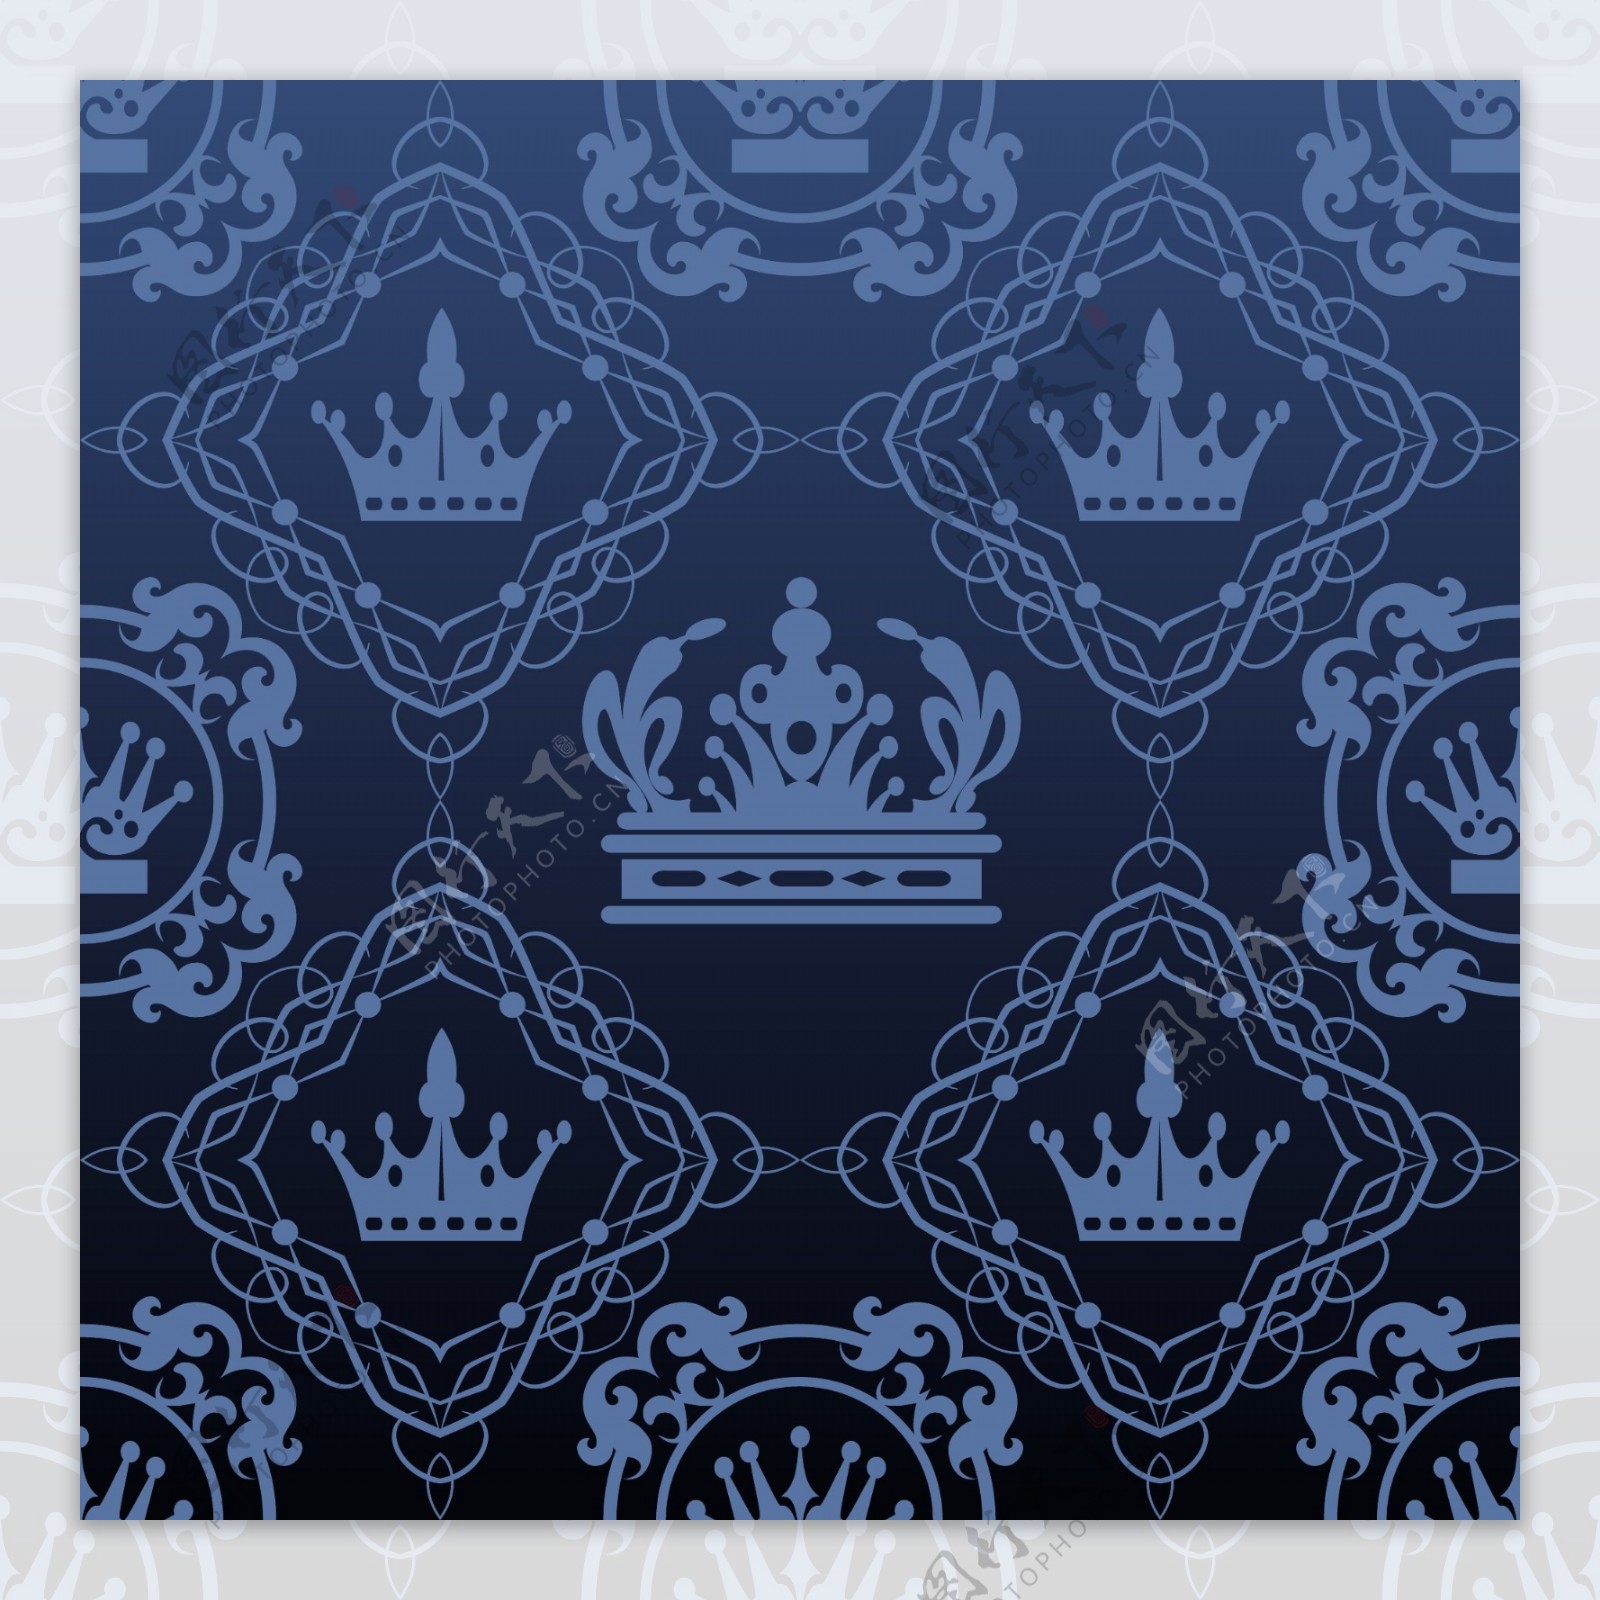 蓝色皇冠无缝背景矢量素材